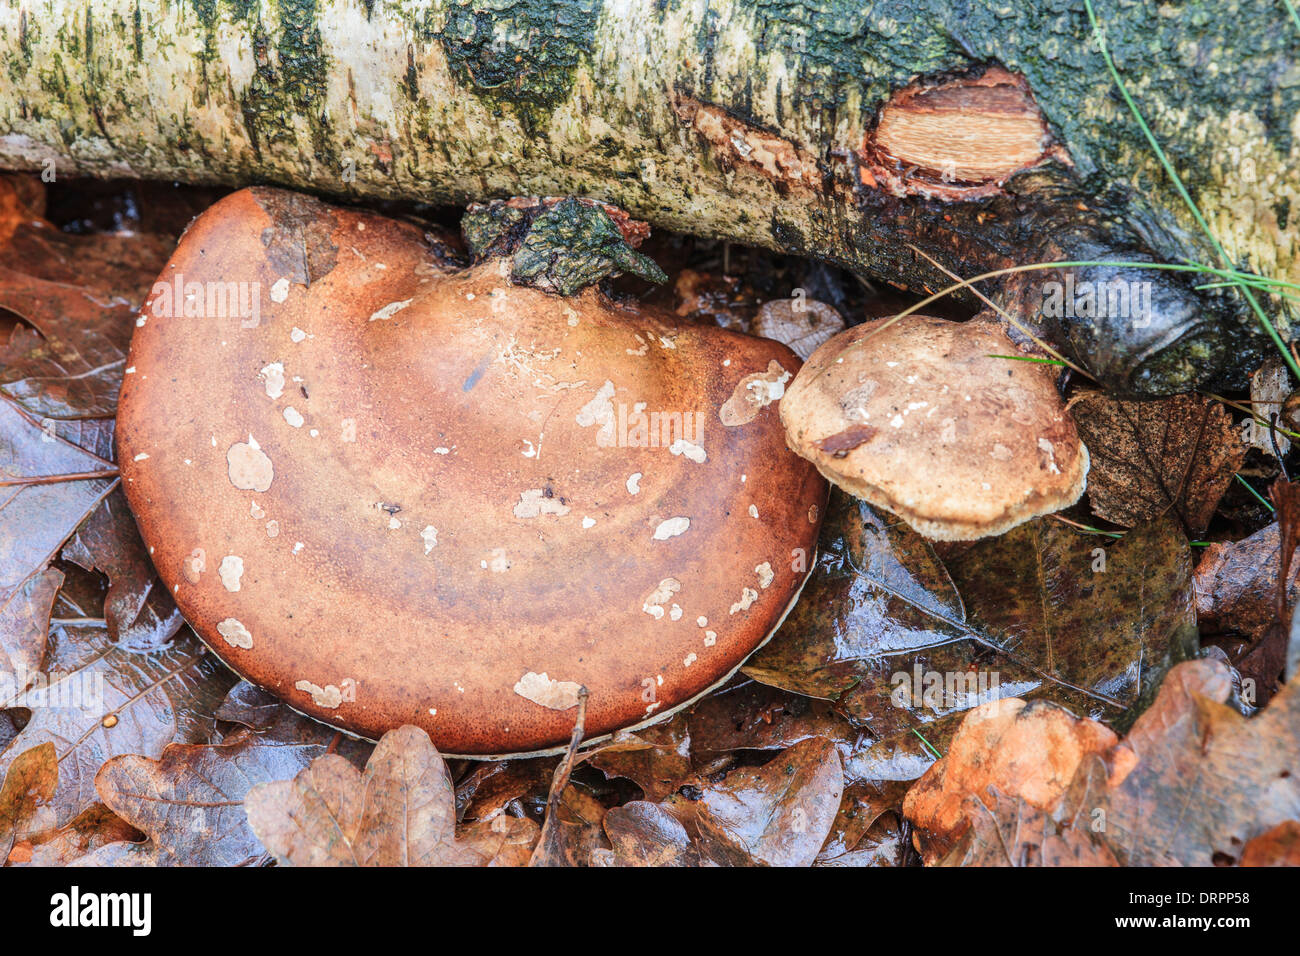 Langue maternelle de bouleau, Piptoporus betulinus champignons d'une carcasse de bouleau Banque D'Images